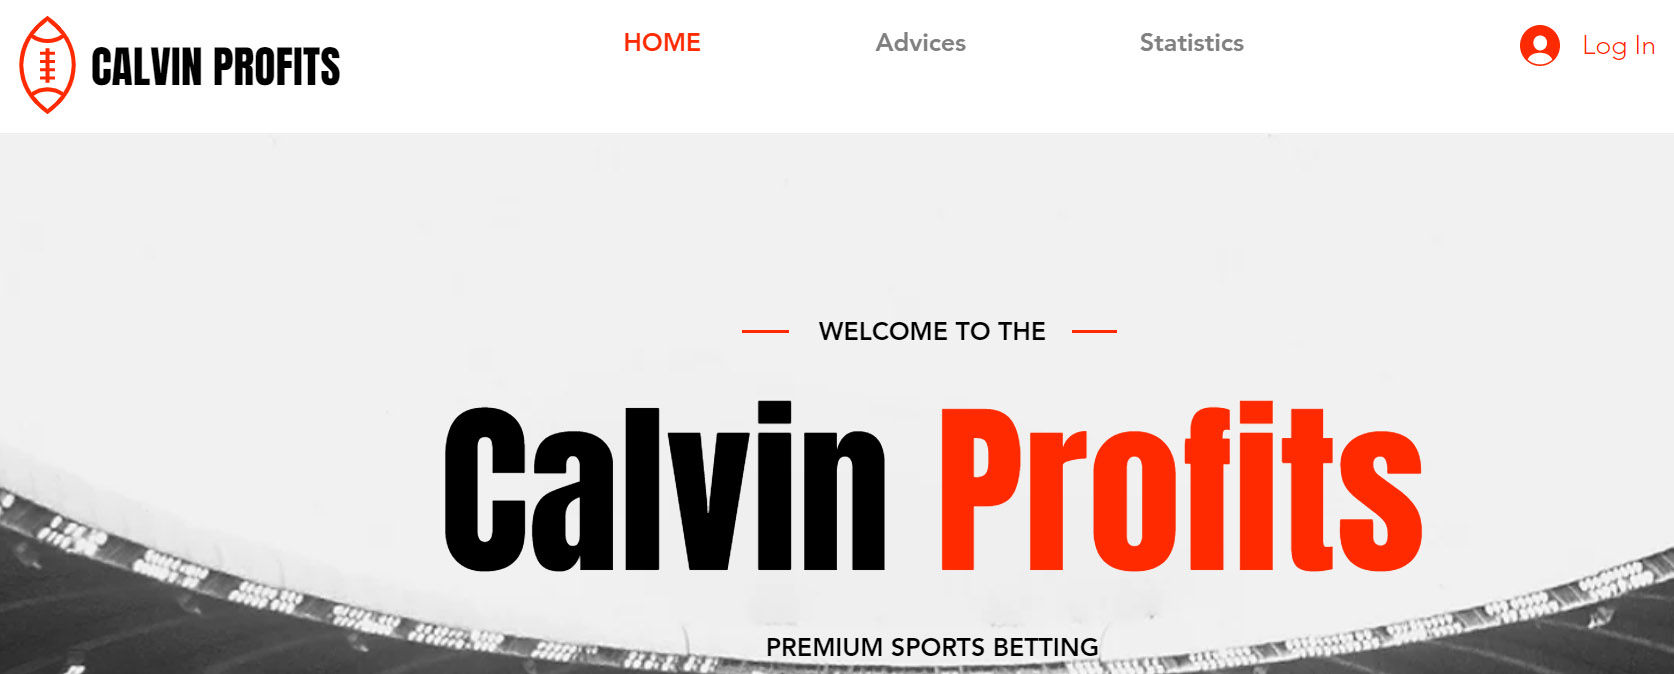 Внешний вид сайта Calvin-Profits com